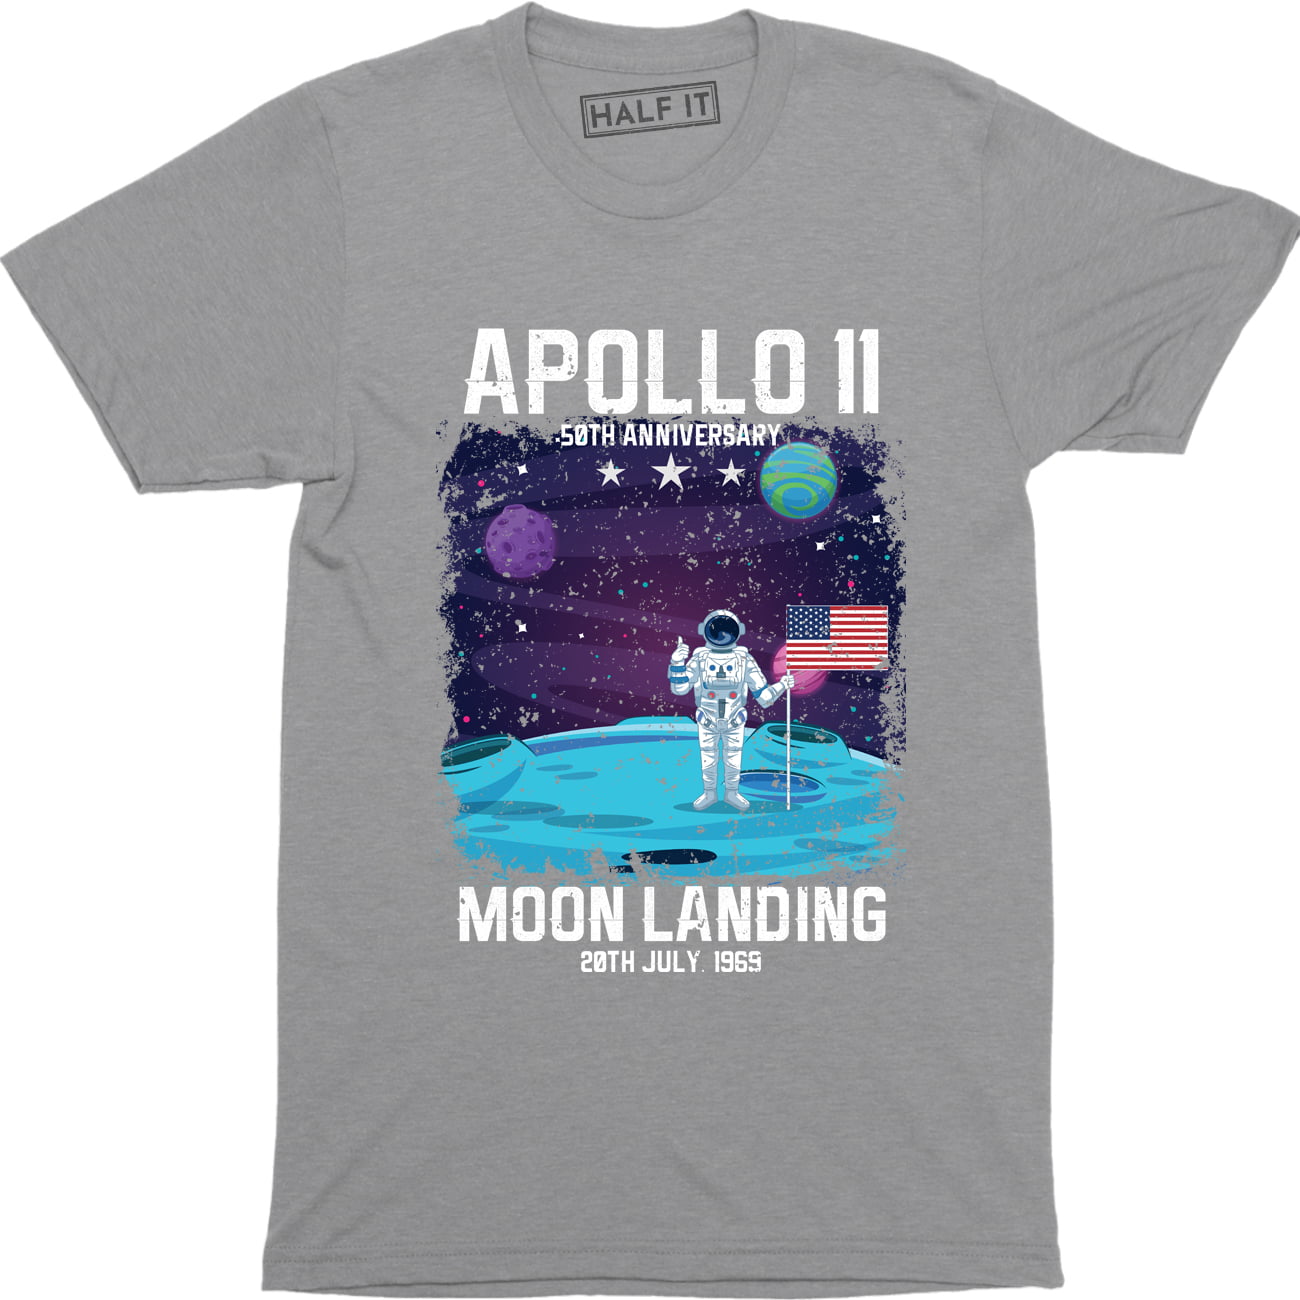 Apollo 11 50th Anniversary Mens Short Sleeve T-Shirt Graphic Tshirts Tee 